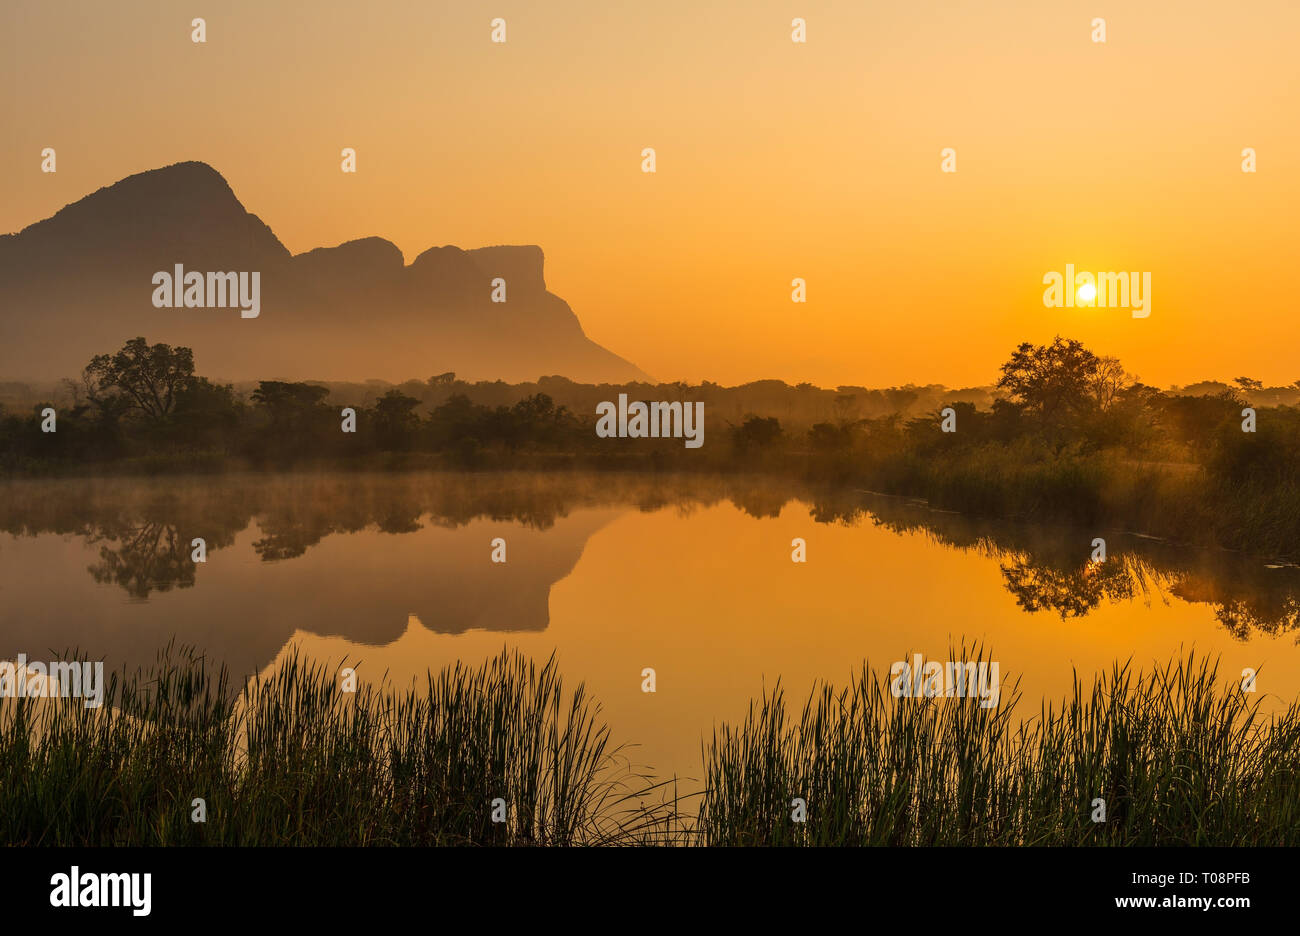 La pendaison lèvre ou Hanglip pic de montagne au lever du soleil dans la brume et le brouillard par un marais, le lac Entabeni Safari Game Reserve, province du Limpopo, Afrique du Sud. Banque D'Images